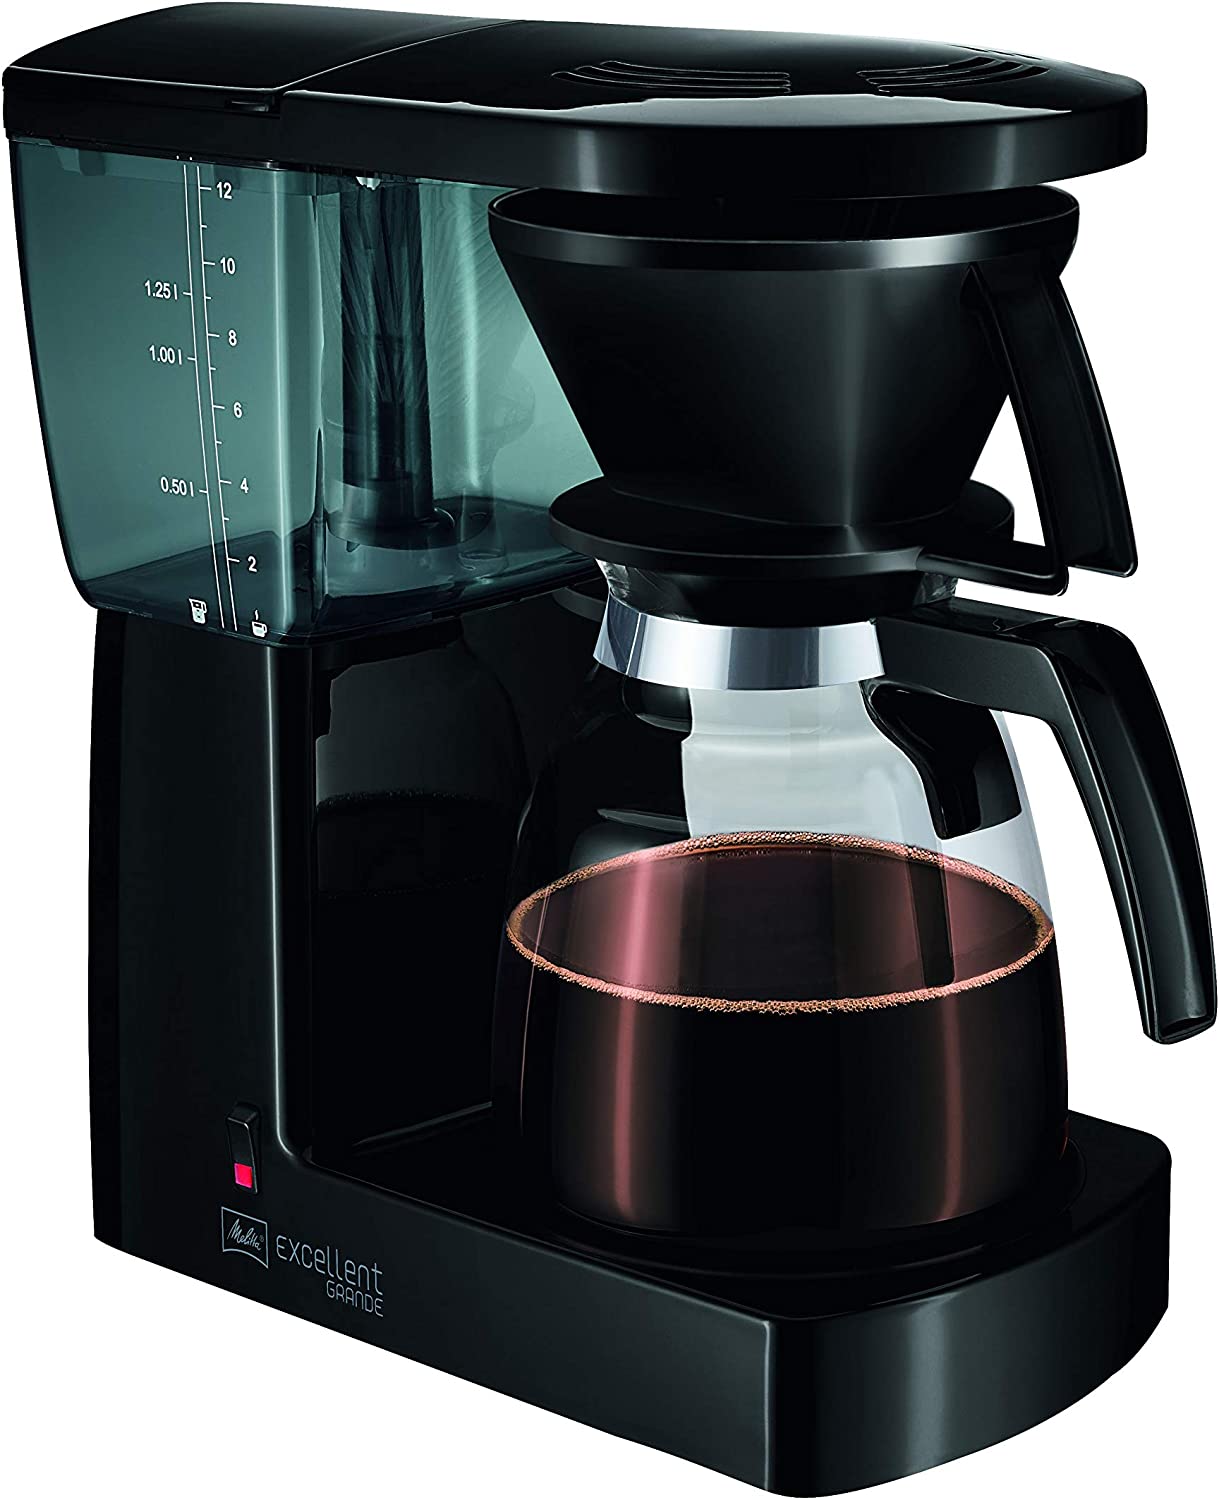 Melitta Excellent Grande M520BK Retro Coffee Machine, Black